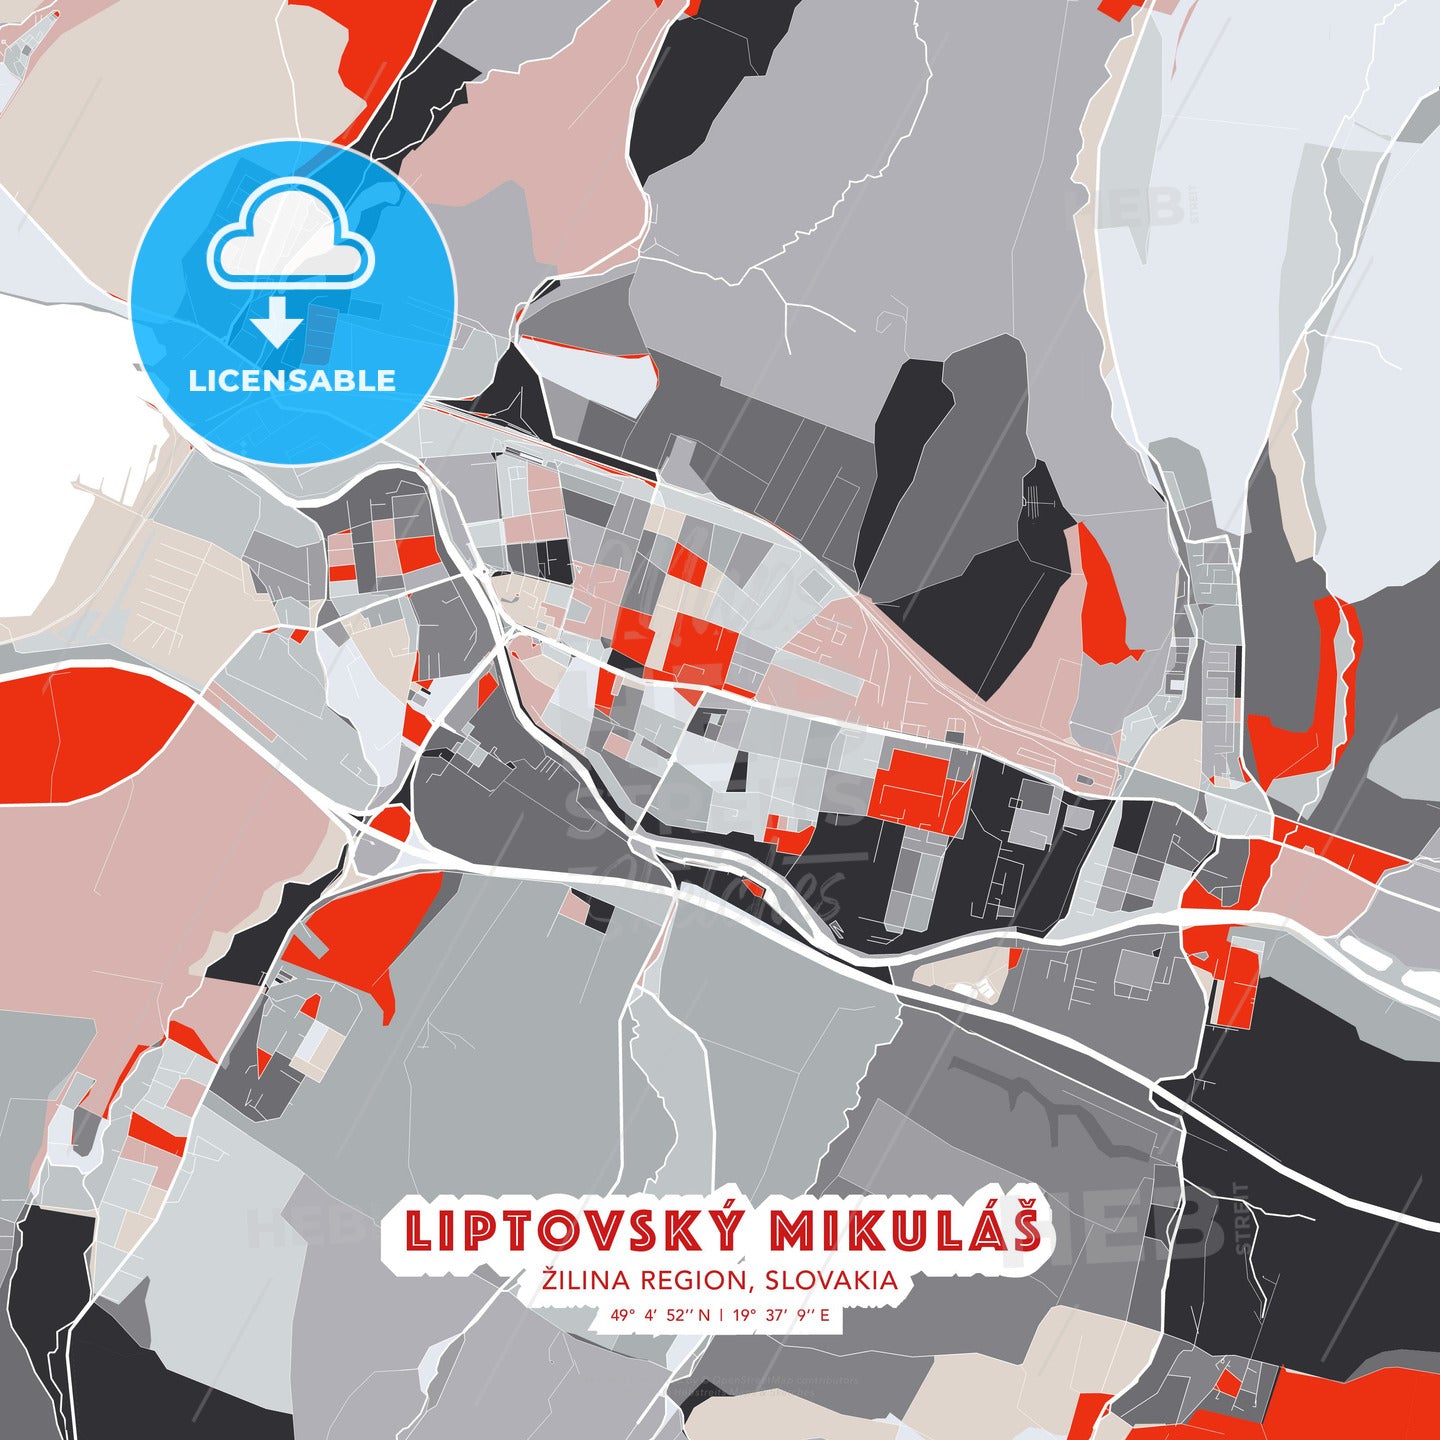 Liptovský Mikuláš, Žilina Region, Slovakia, modern map - HEBSTREITS Sketches